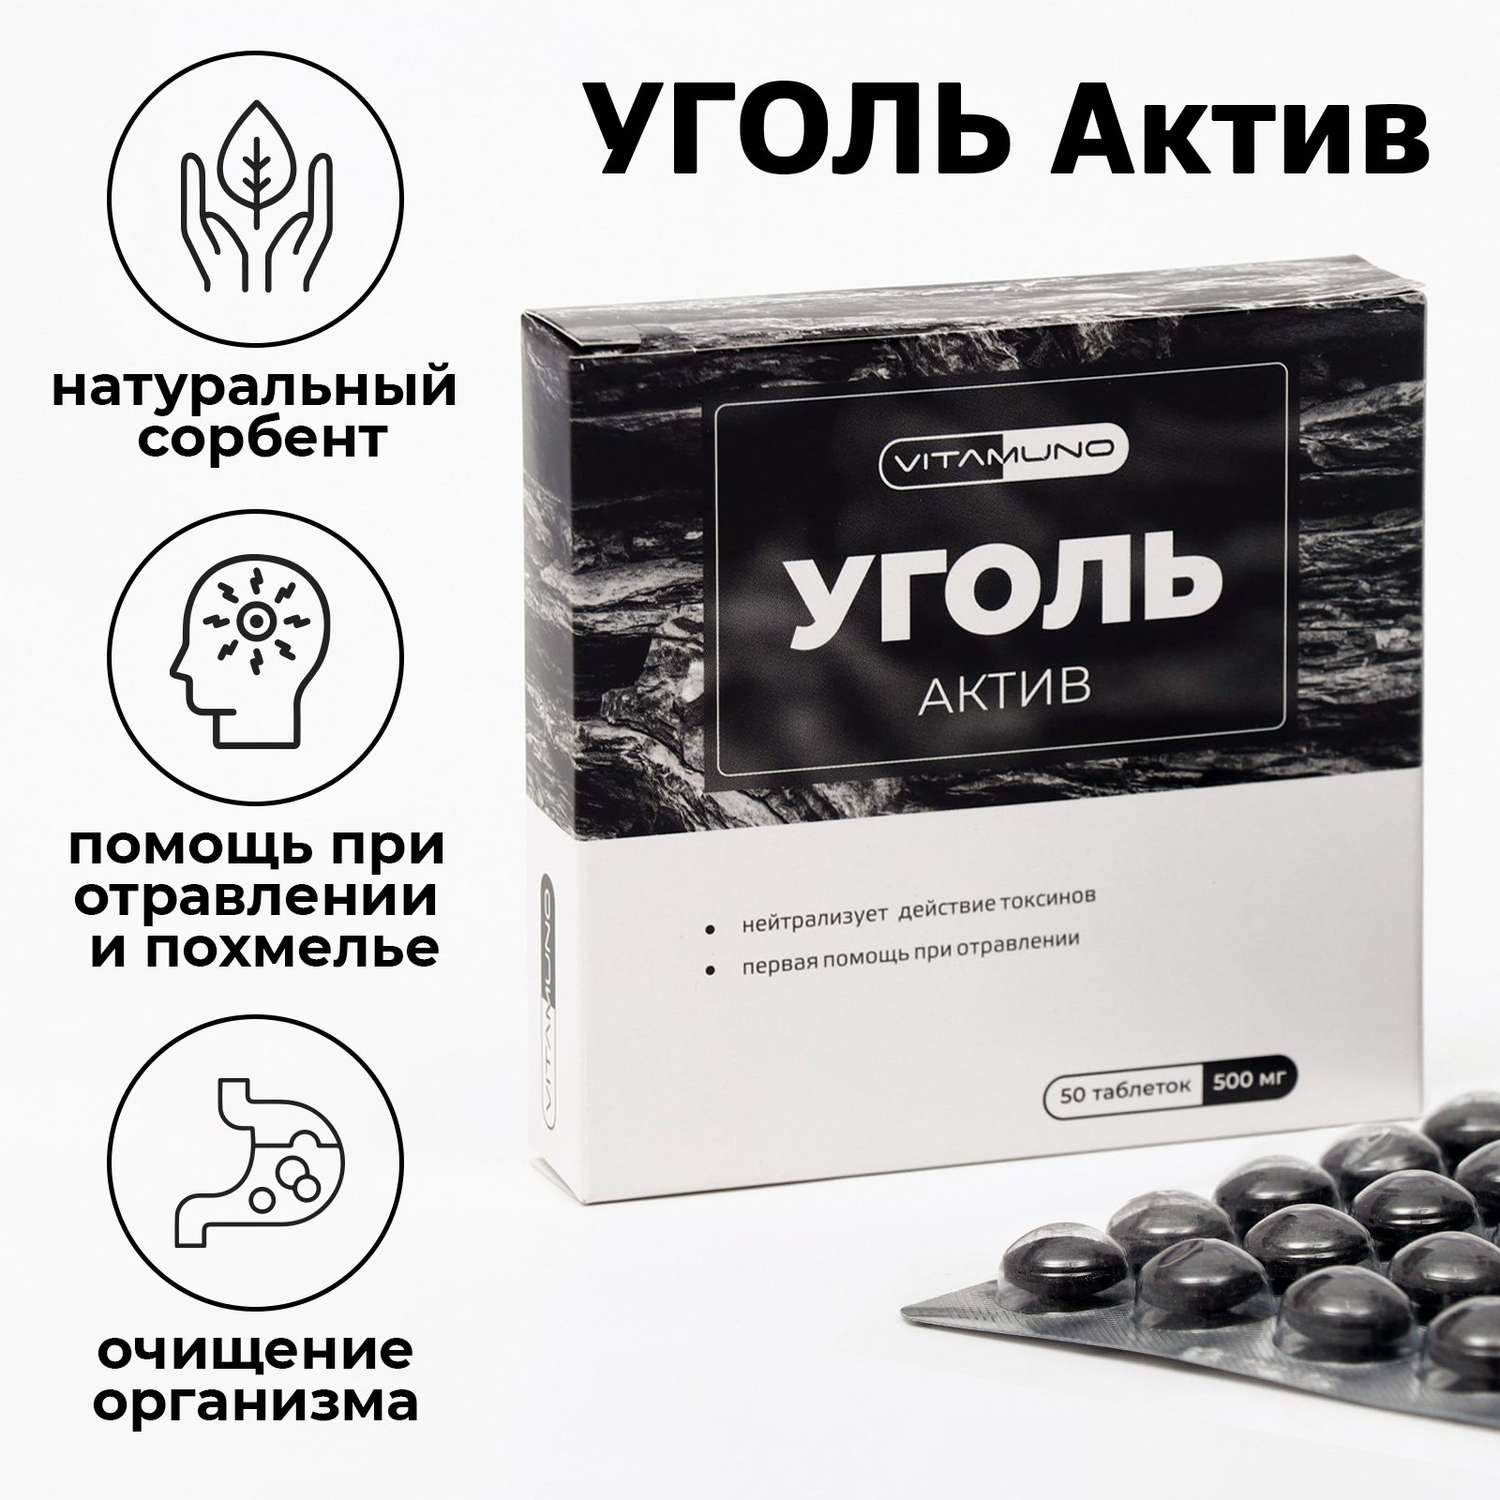 Уголь активированный Vitamuno абсорбирующий 50 таблеток по 500 мг - фото 1